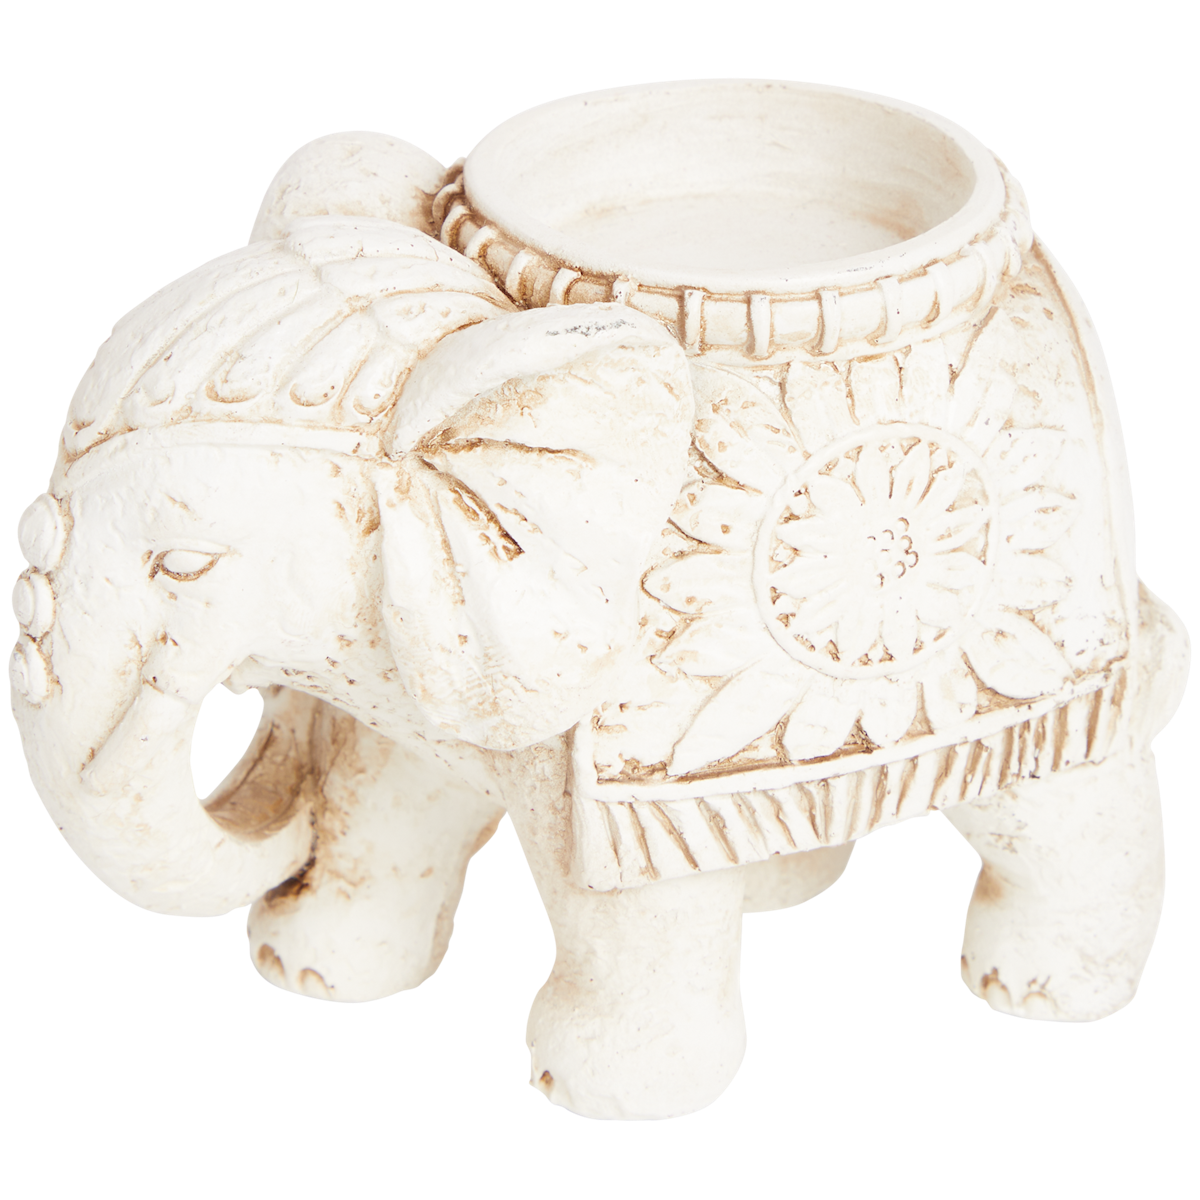 Teelichthalter Buddha oder Elefant